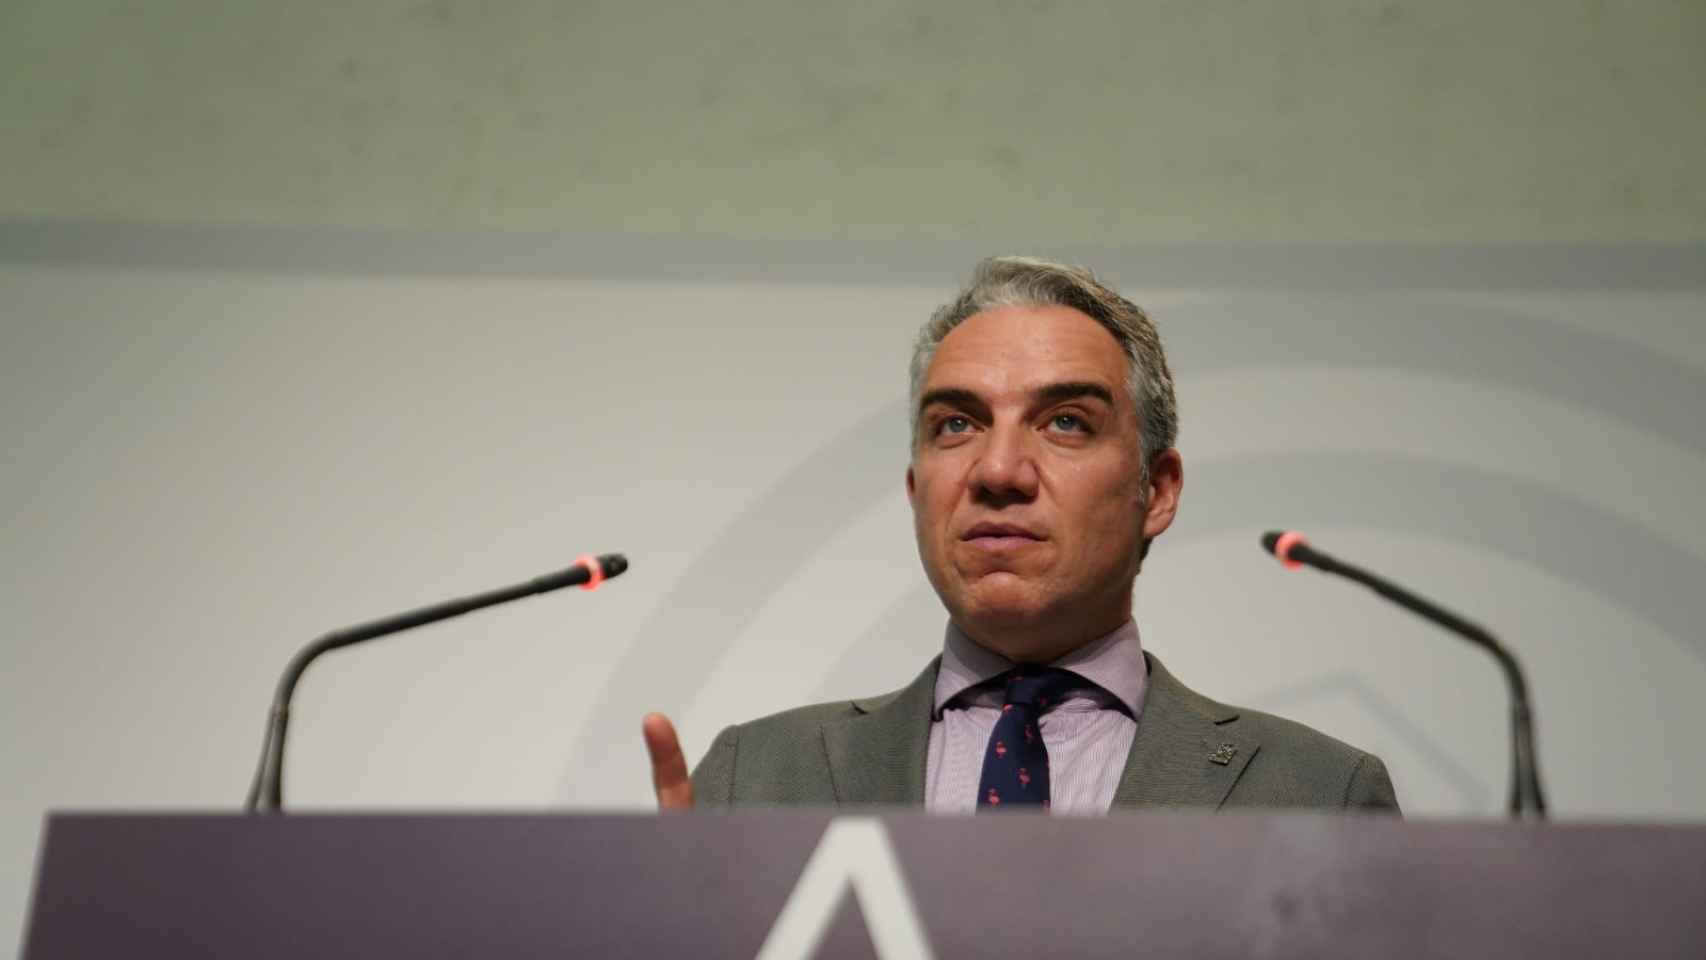 El consejero de la Presidencia en Andalucía, Elías Bendodo.